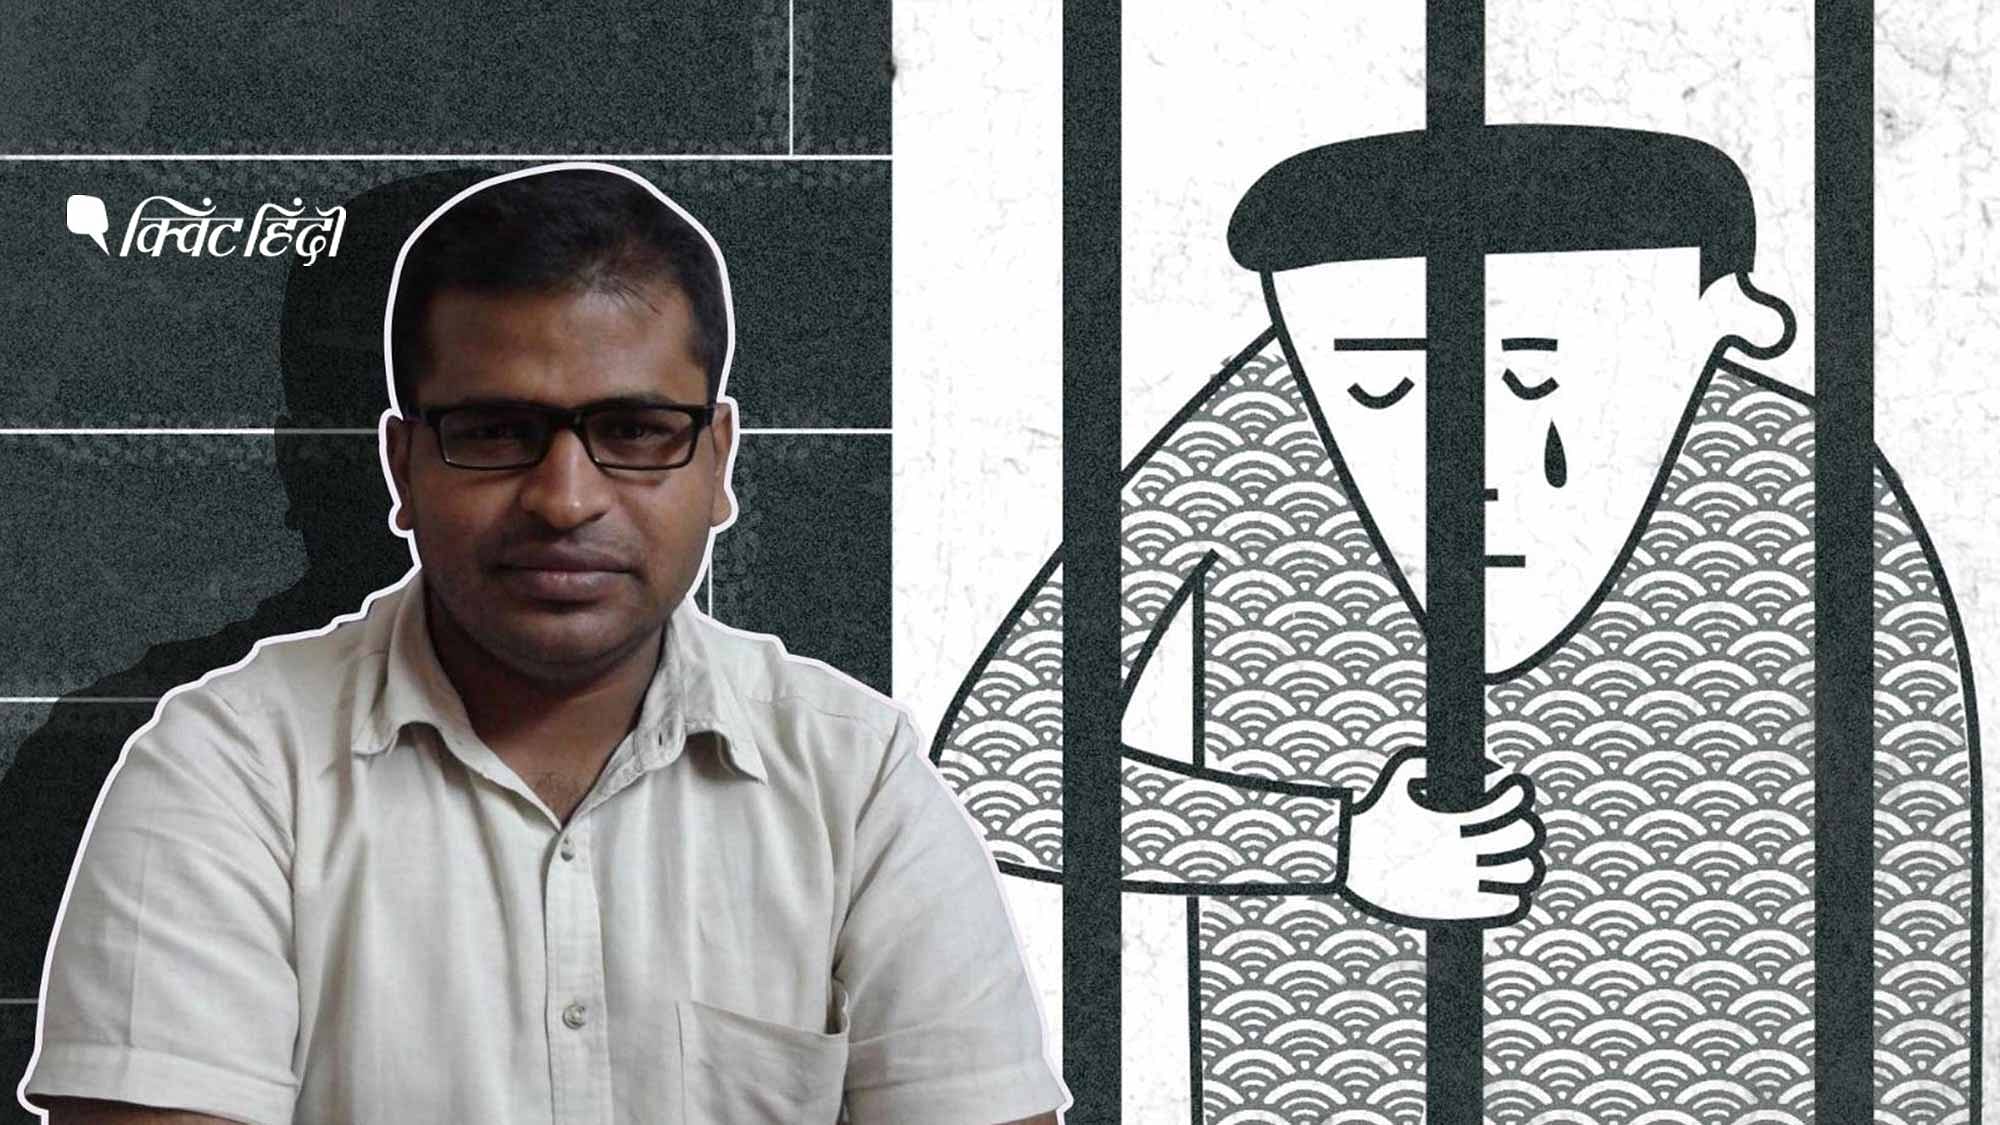 20 दिसंबर को CAA के खिलाफ प्रदर्शन के दौरान एक्टिविस्ट रॉबिन वर्मा को यूपी पुलिस ने गिरफ्तार किया था